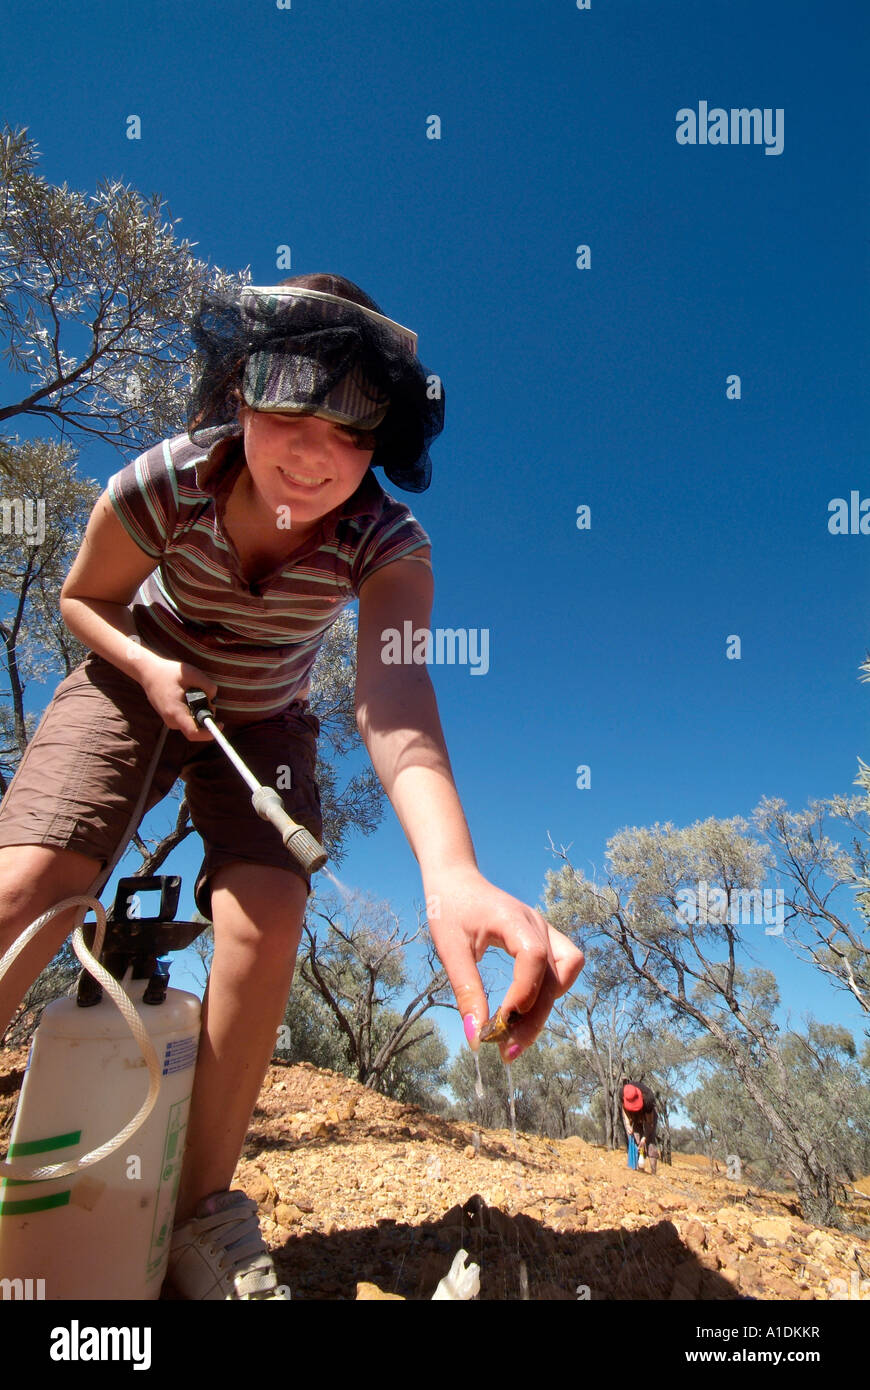 Fossicker auf der Suche nach Opale auf Opalton, outback Queensland Australien, Foto von Bruce Miller Stockfoto